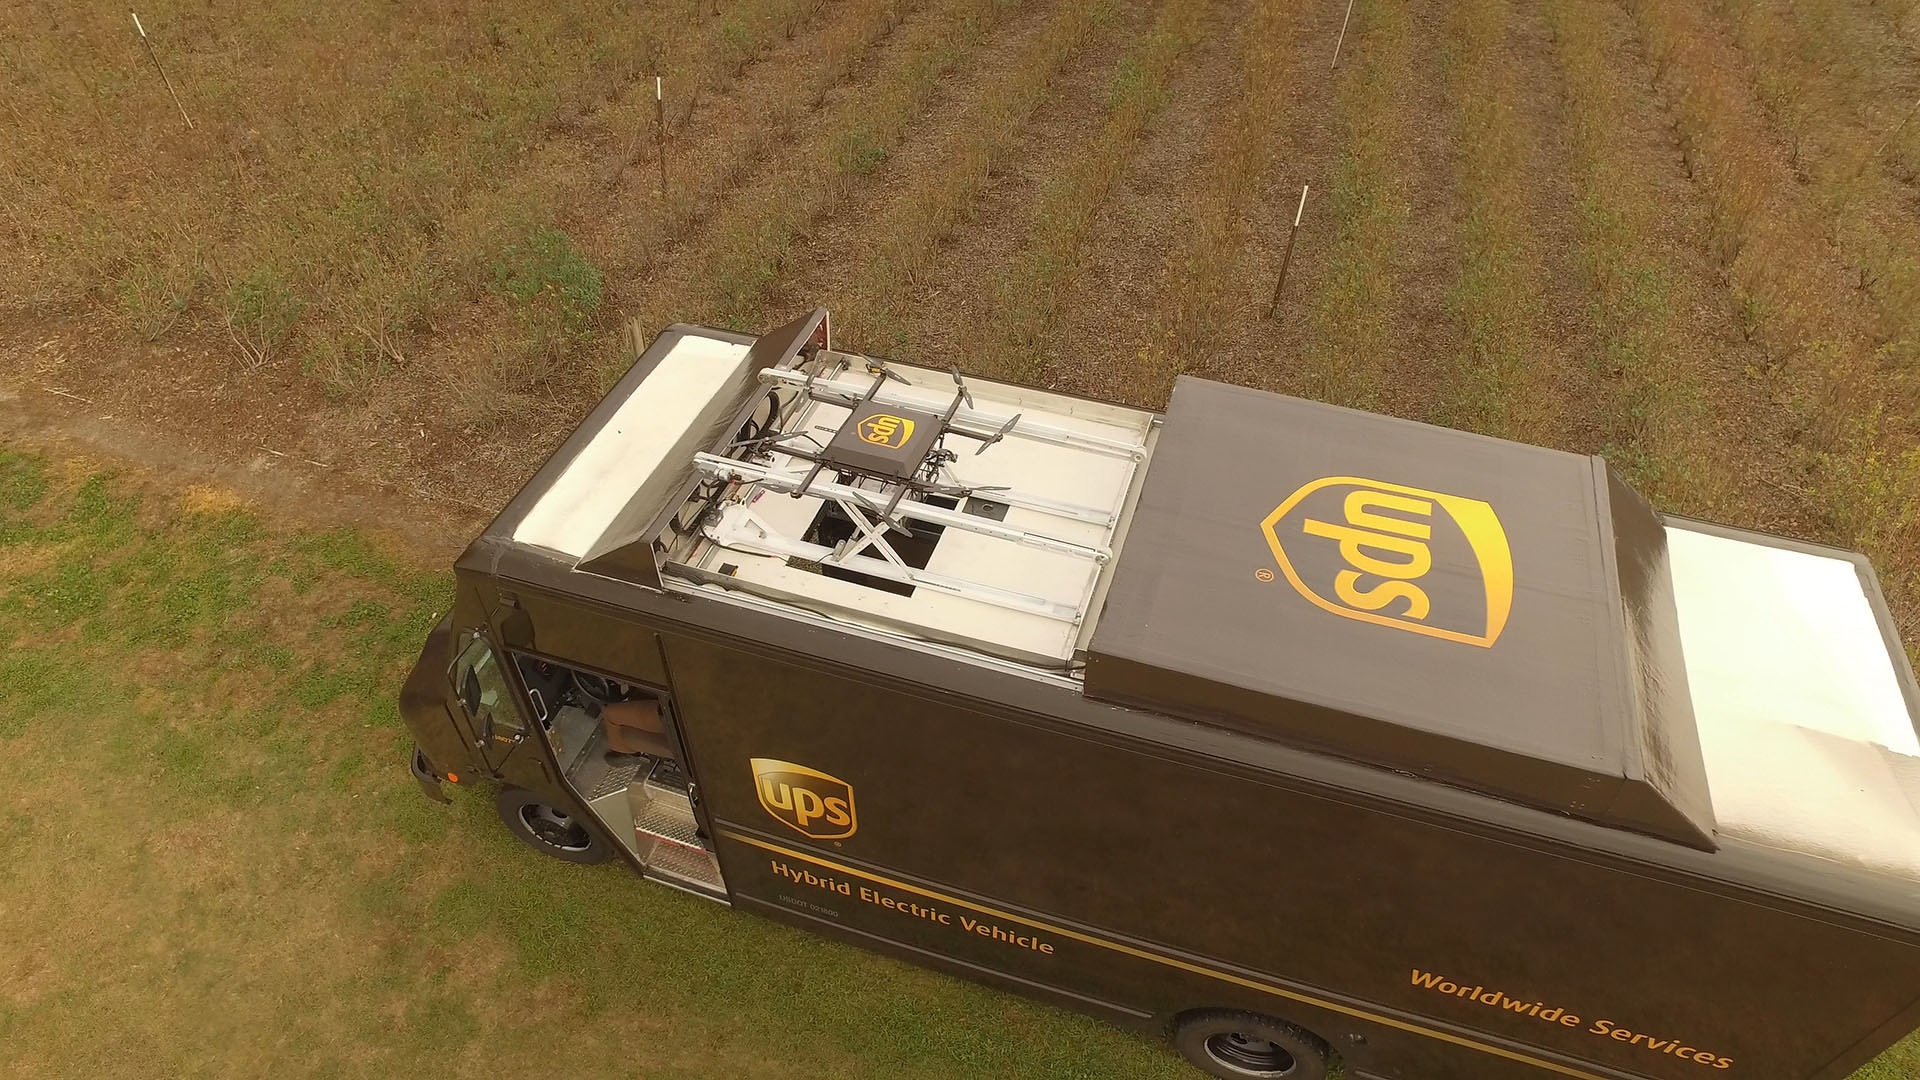 UPS thử nghiệm giao hàng bằng UAV gắn trên xe